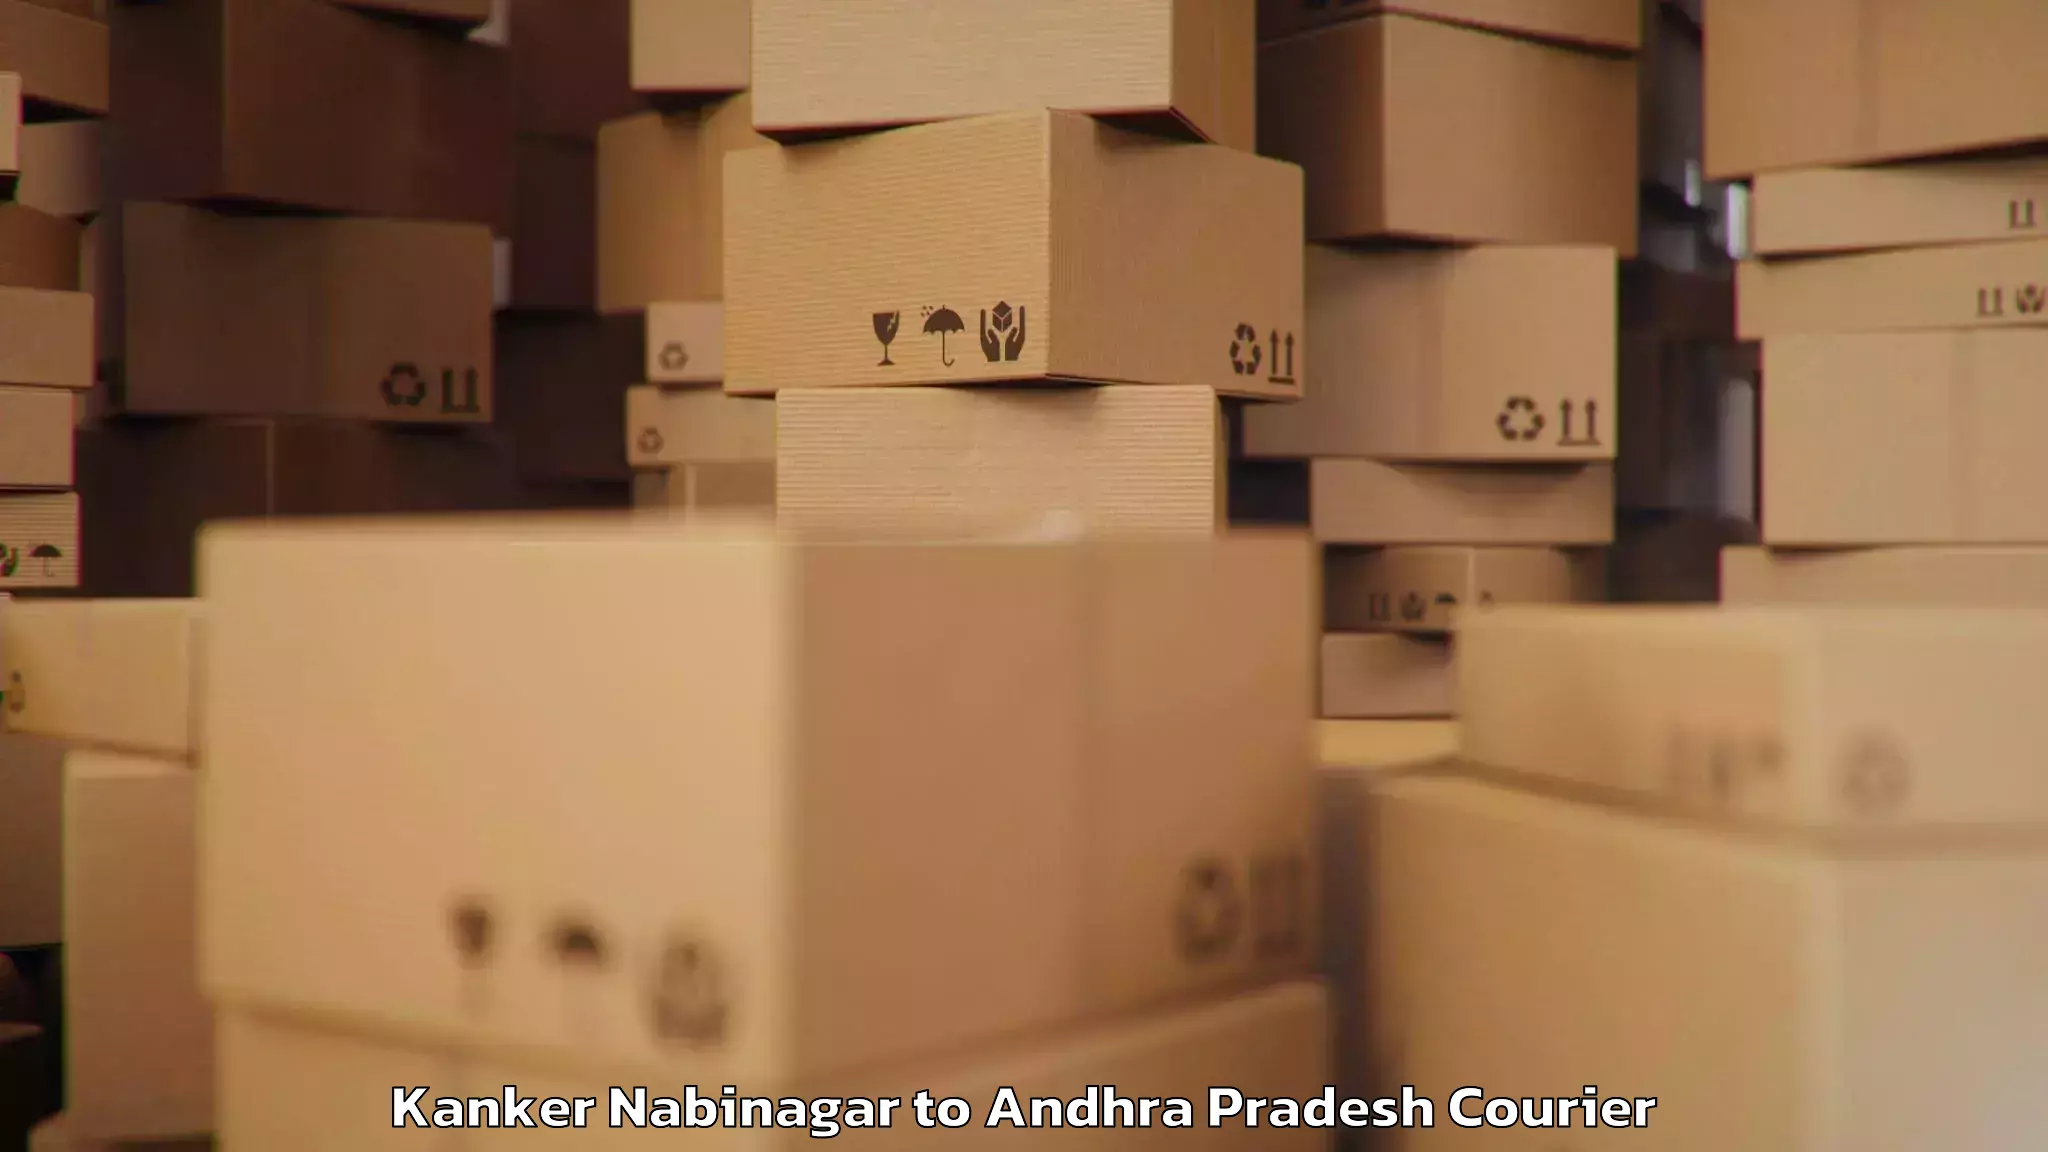 Baggage shipping schedule Kanker Nabinagar to Akividu